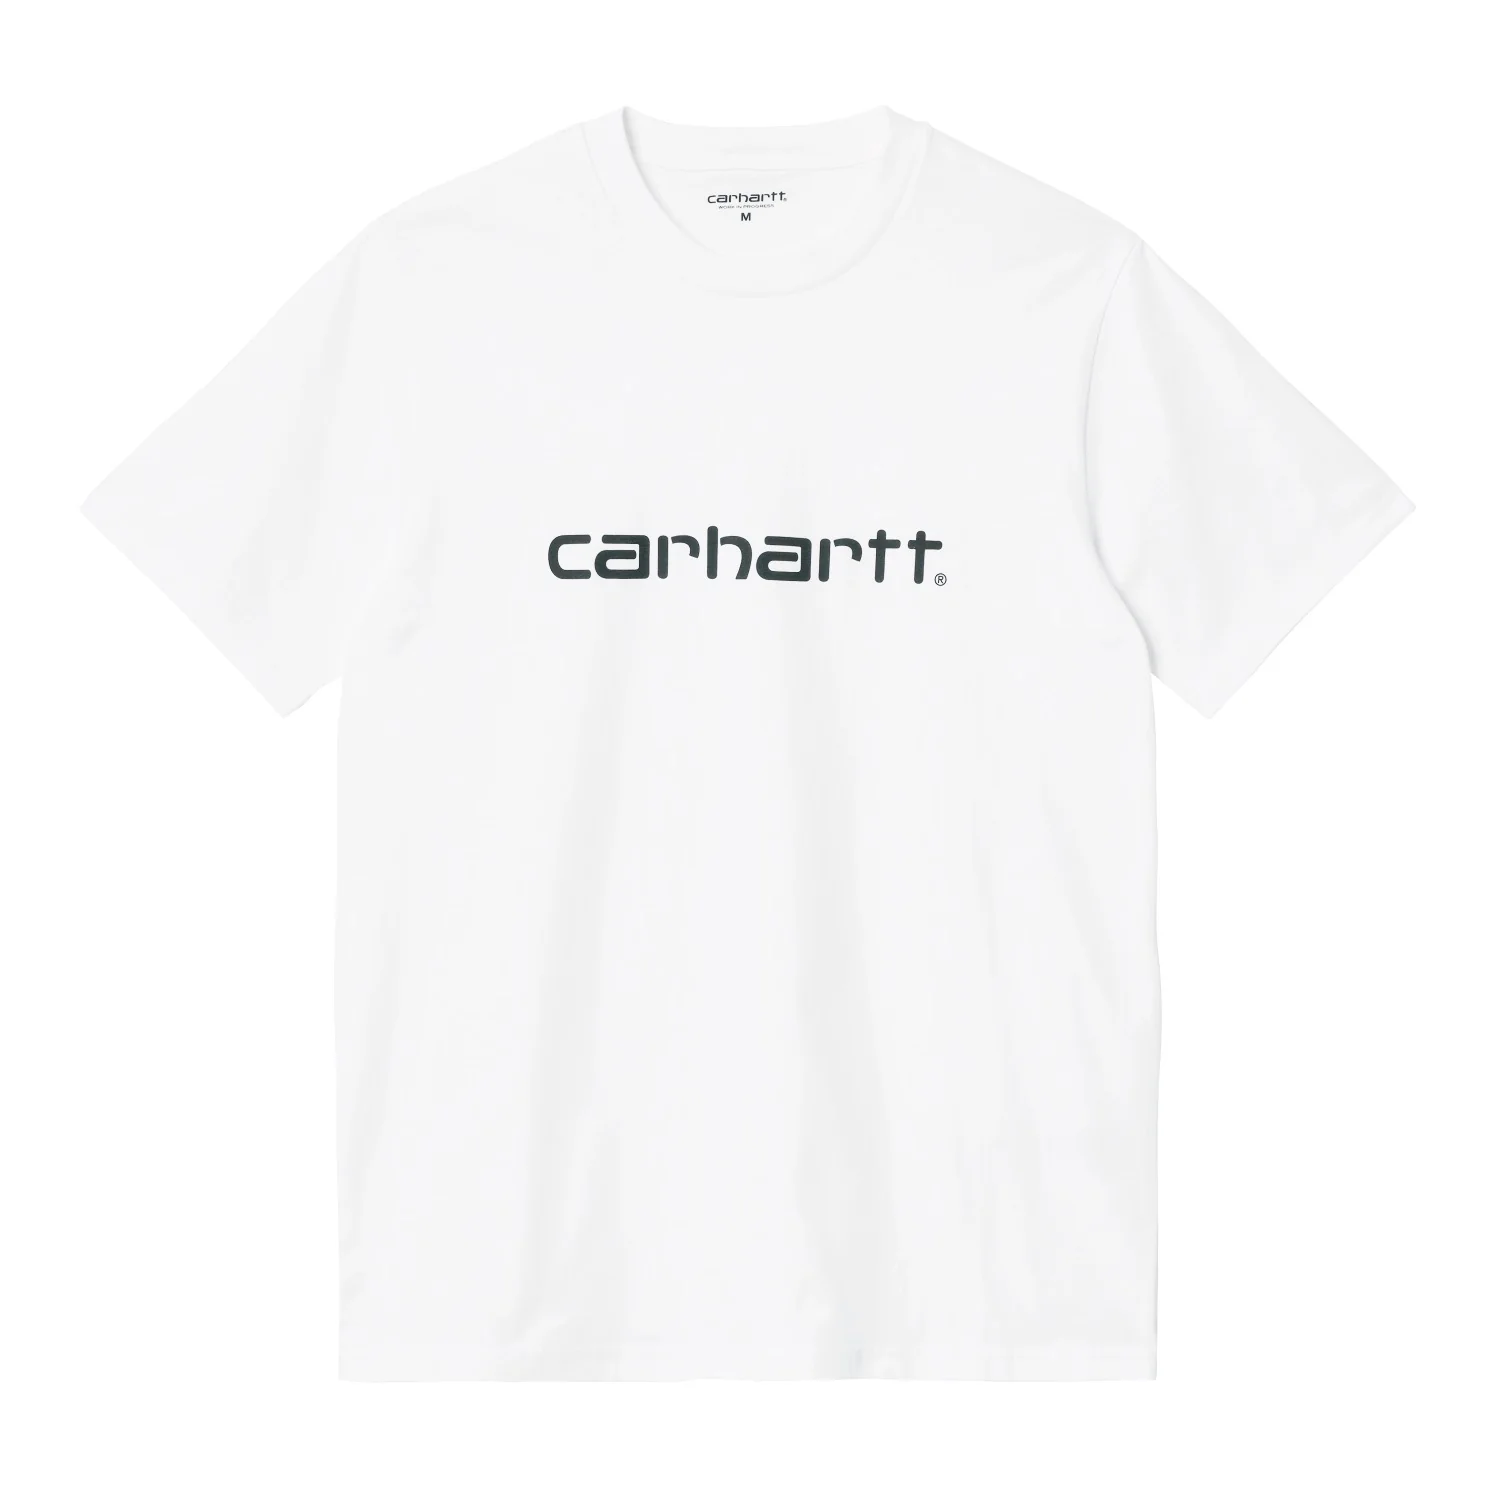 carhartt 新作Tシャツを入荷!